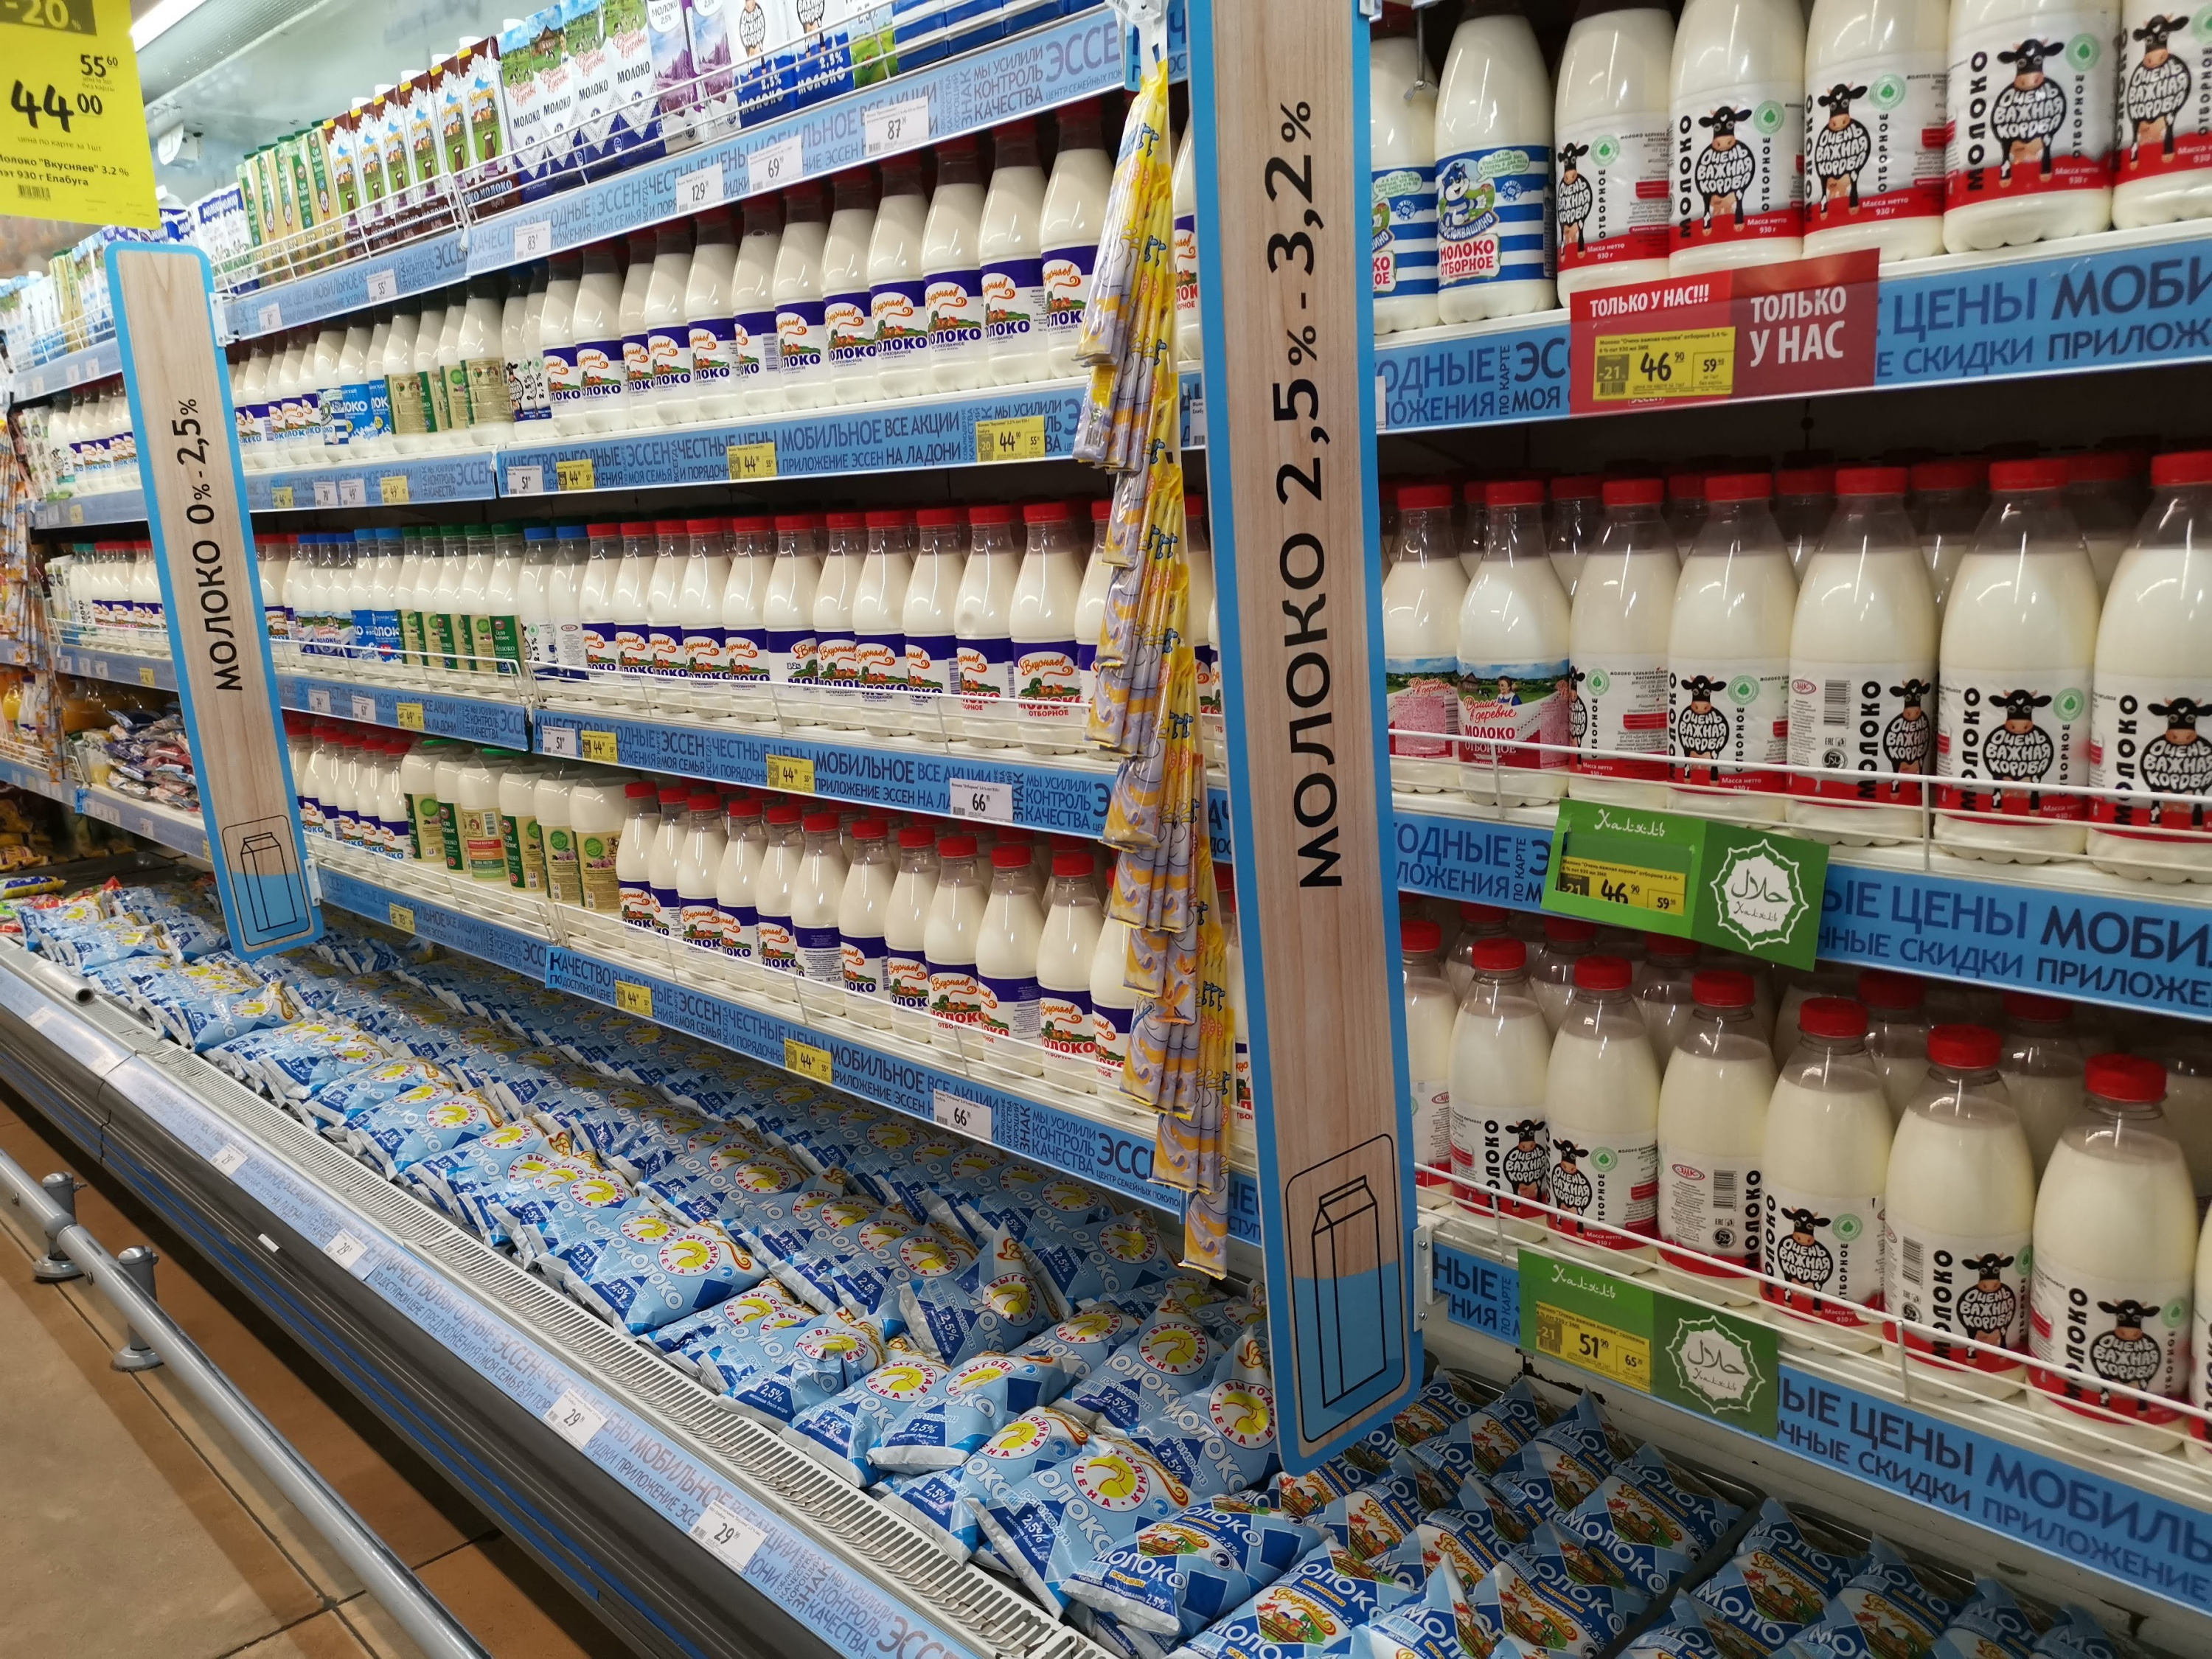 Изменятся ли принципы управления ассортиментом после введения обязательной маркировки молочных продуктов?